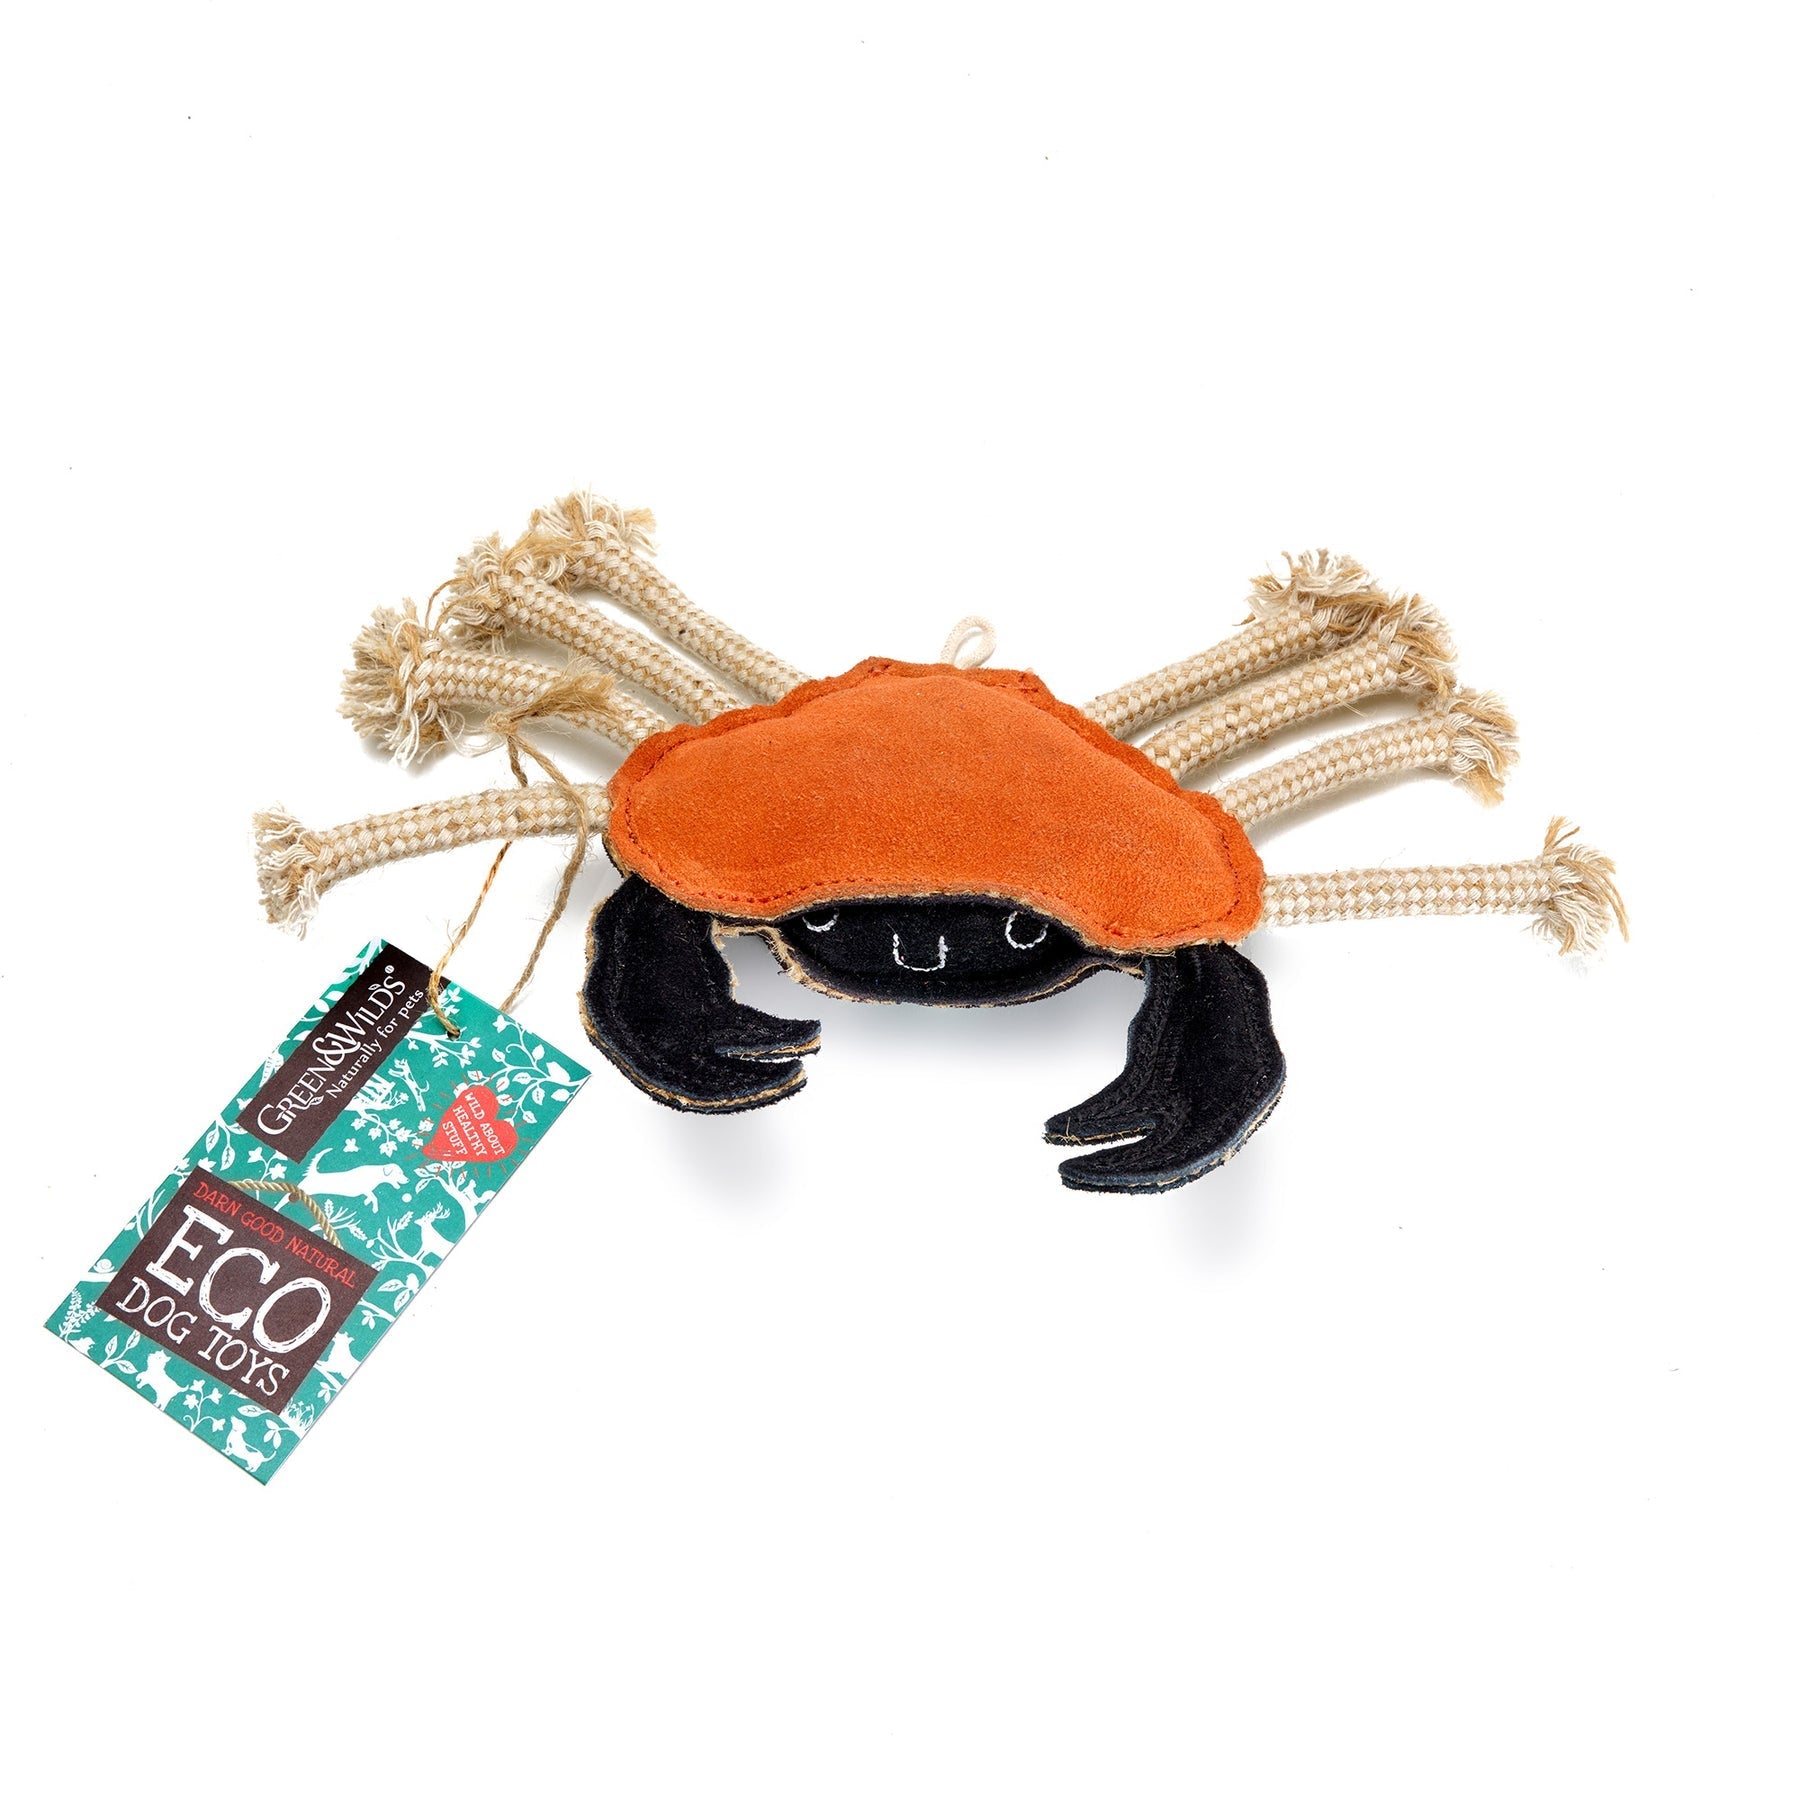 Carlos the Crab Natural Dog Toy